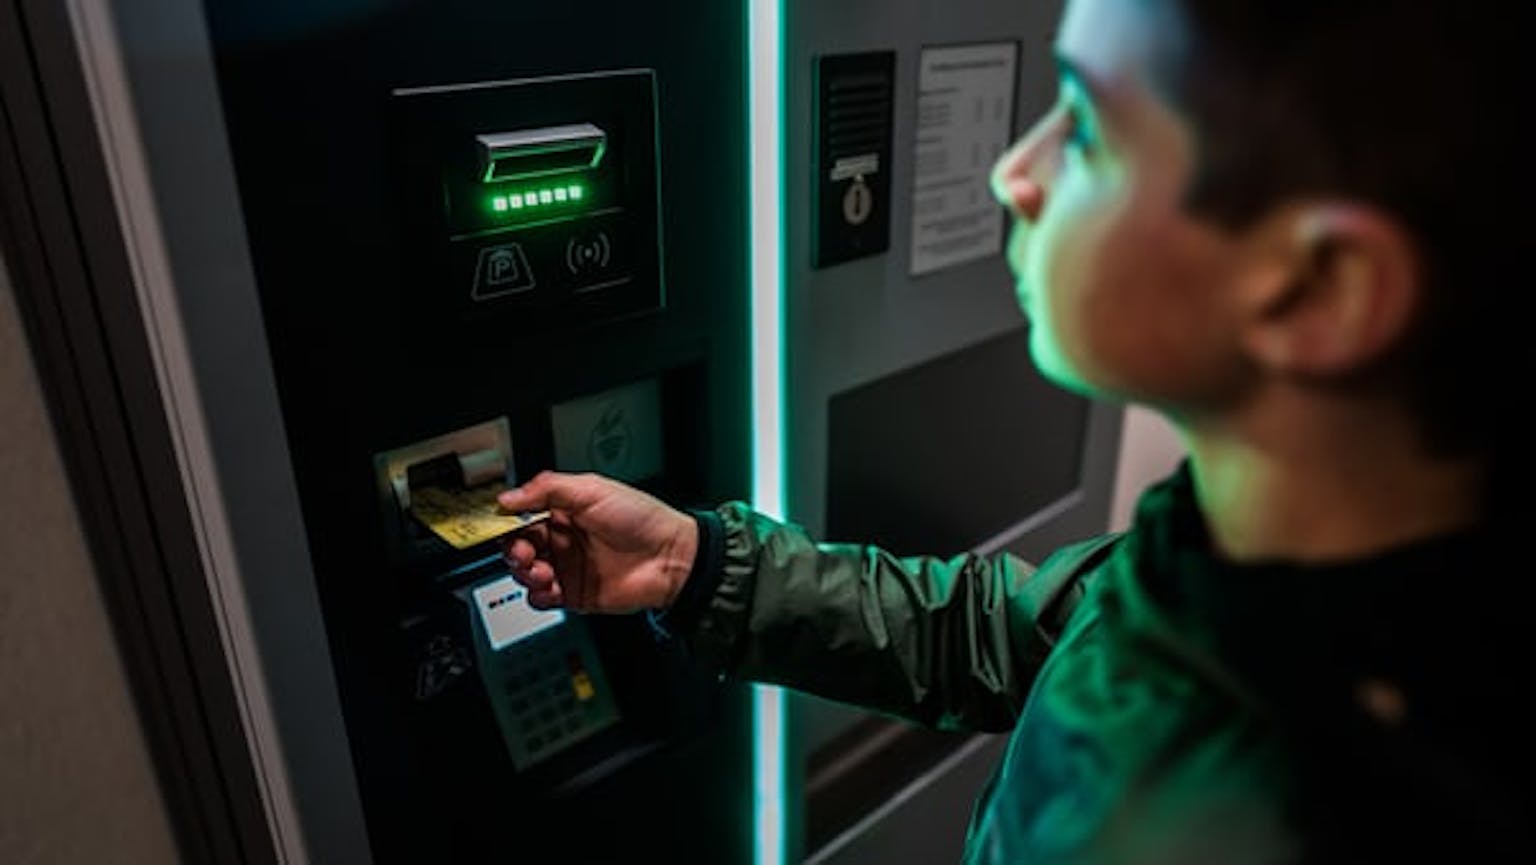 Setiap Jenis Kartu ATM Memiliki LImit Yang Berbeda-beda